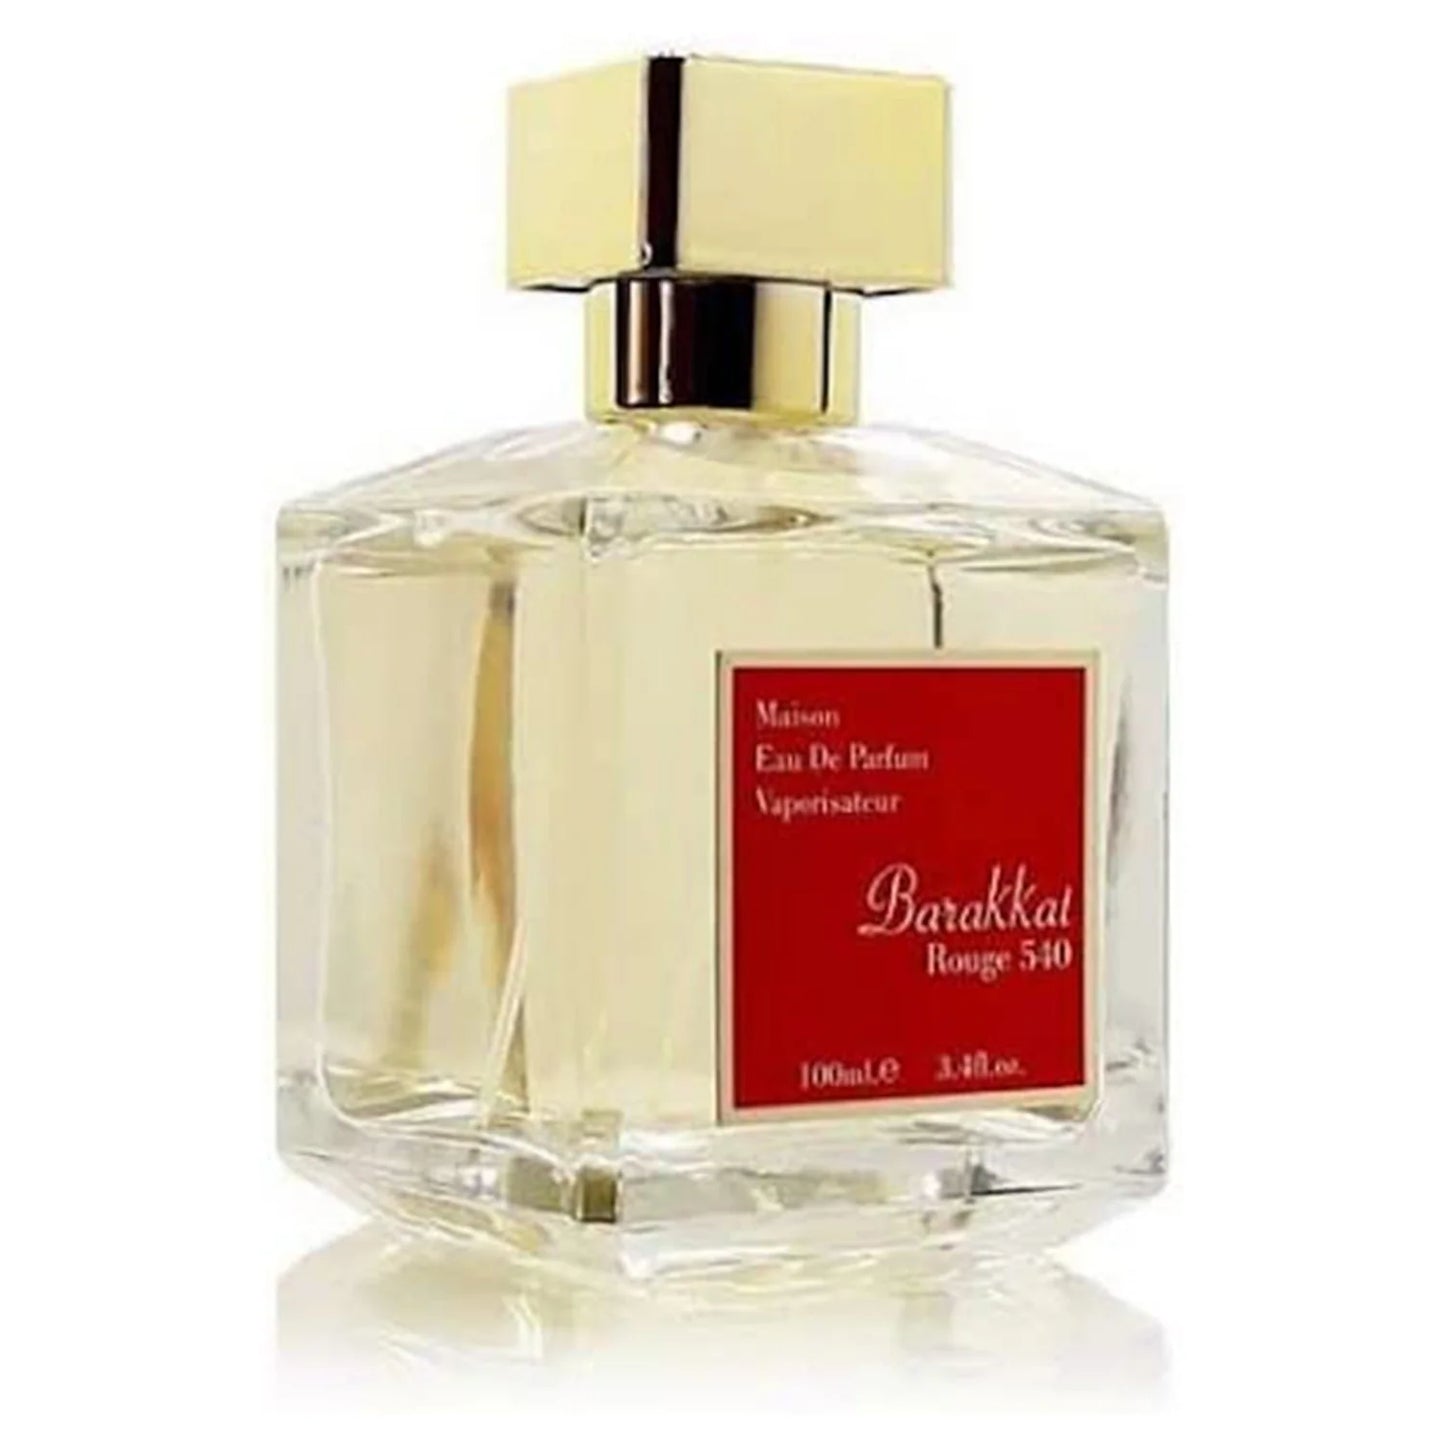 Barakkat Rouge 540 | Eau de Parfum 100ml | By Fragrance World